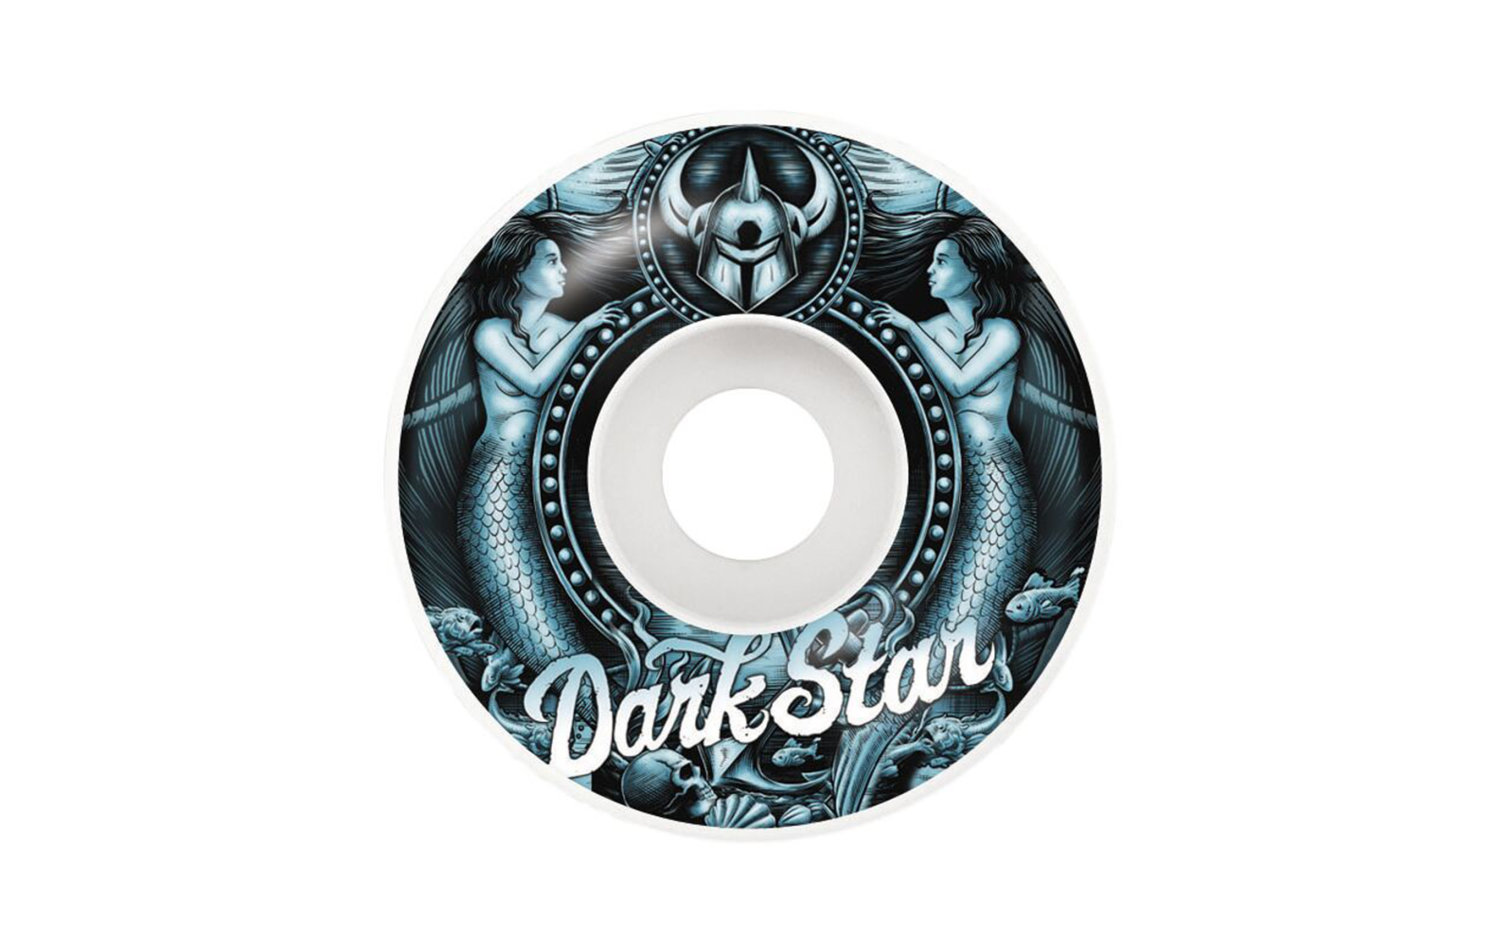 Darkstar Mermaid Wheel 53mm (10112313)